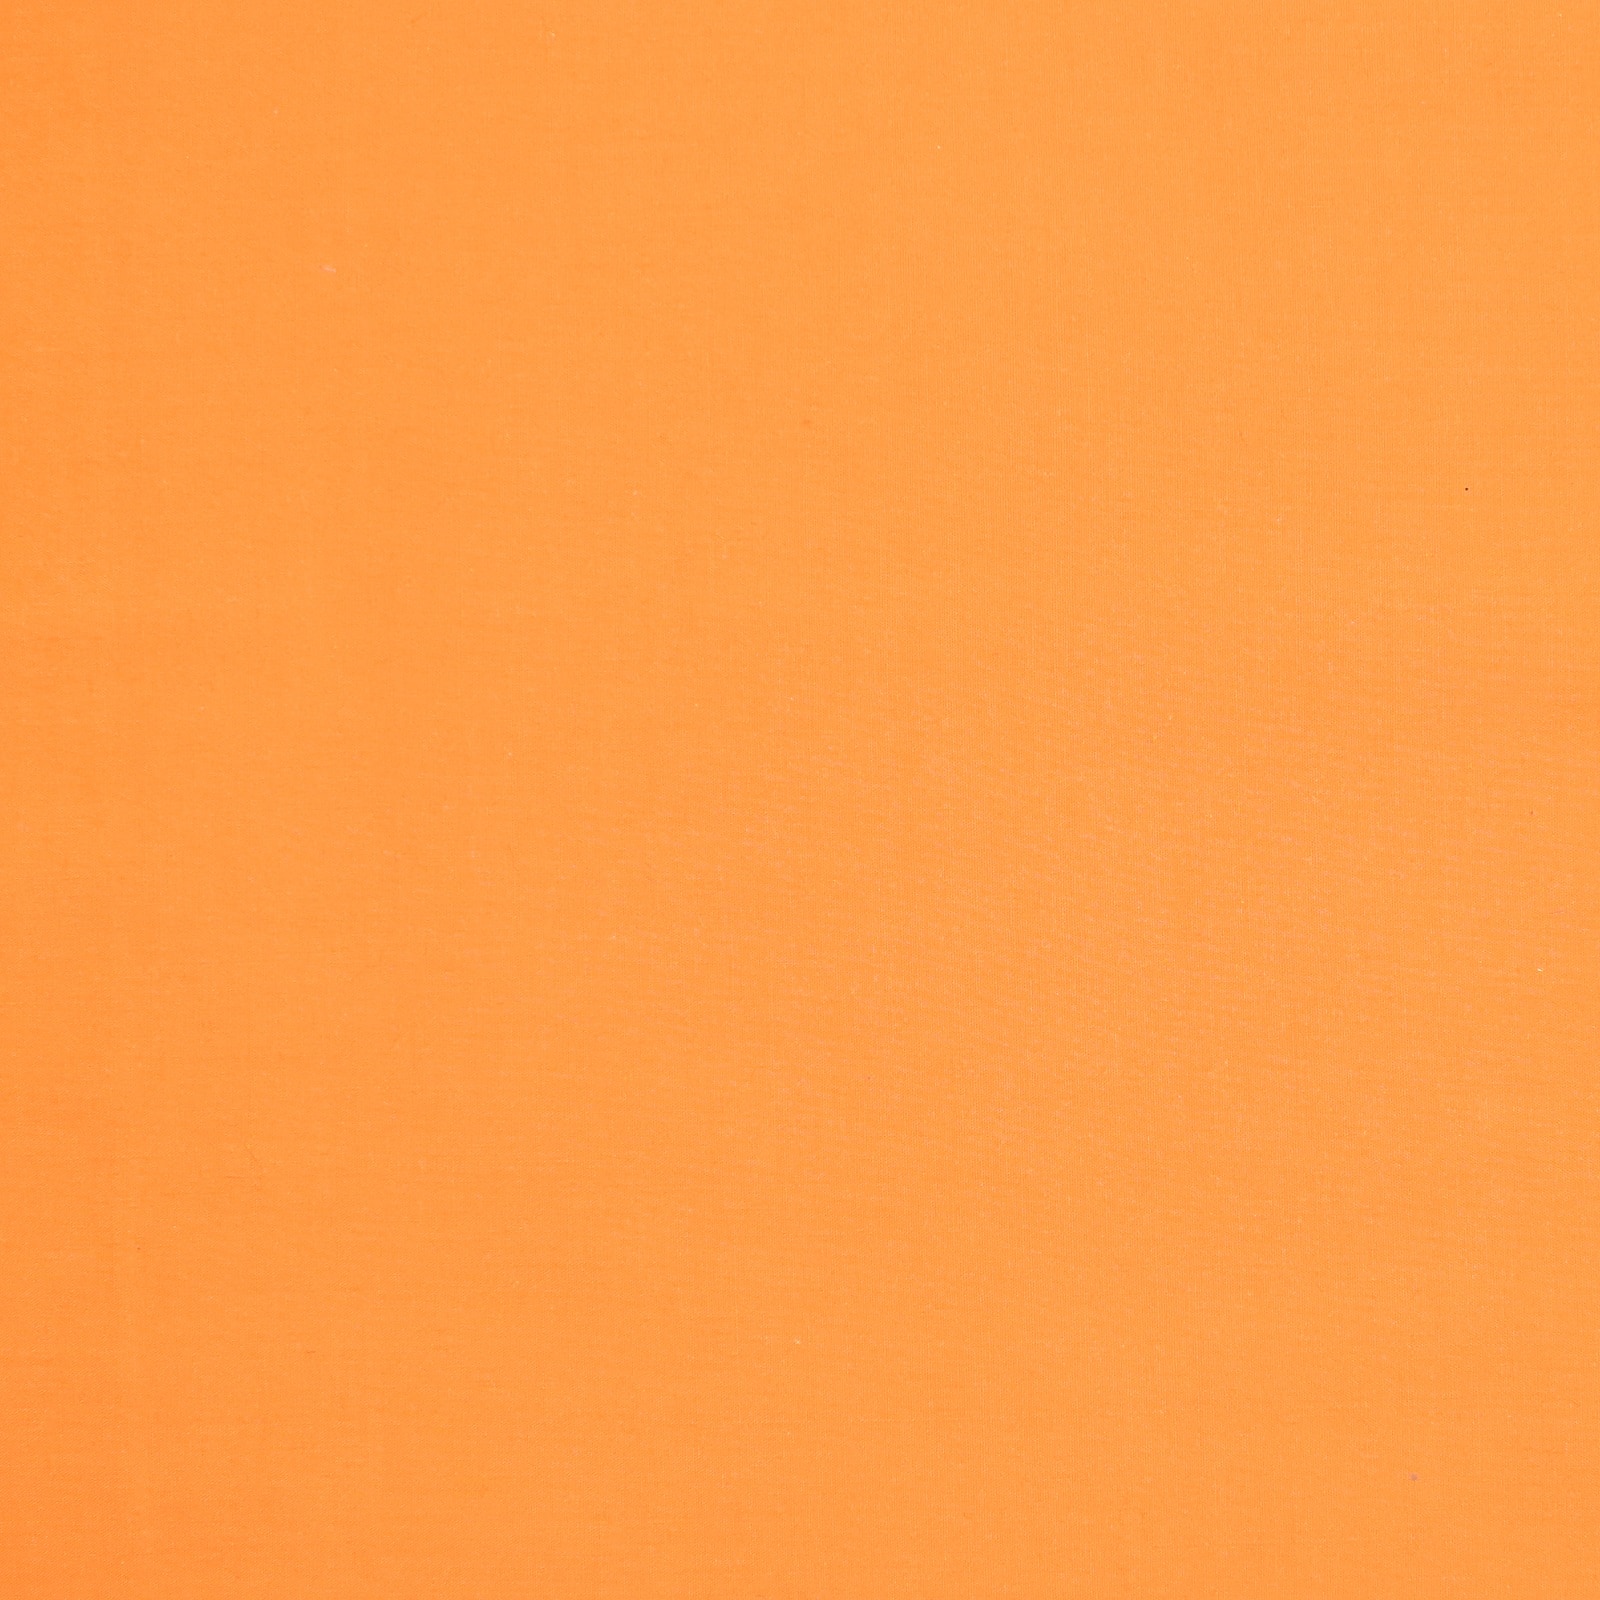 solid light orange background